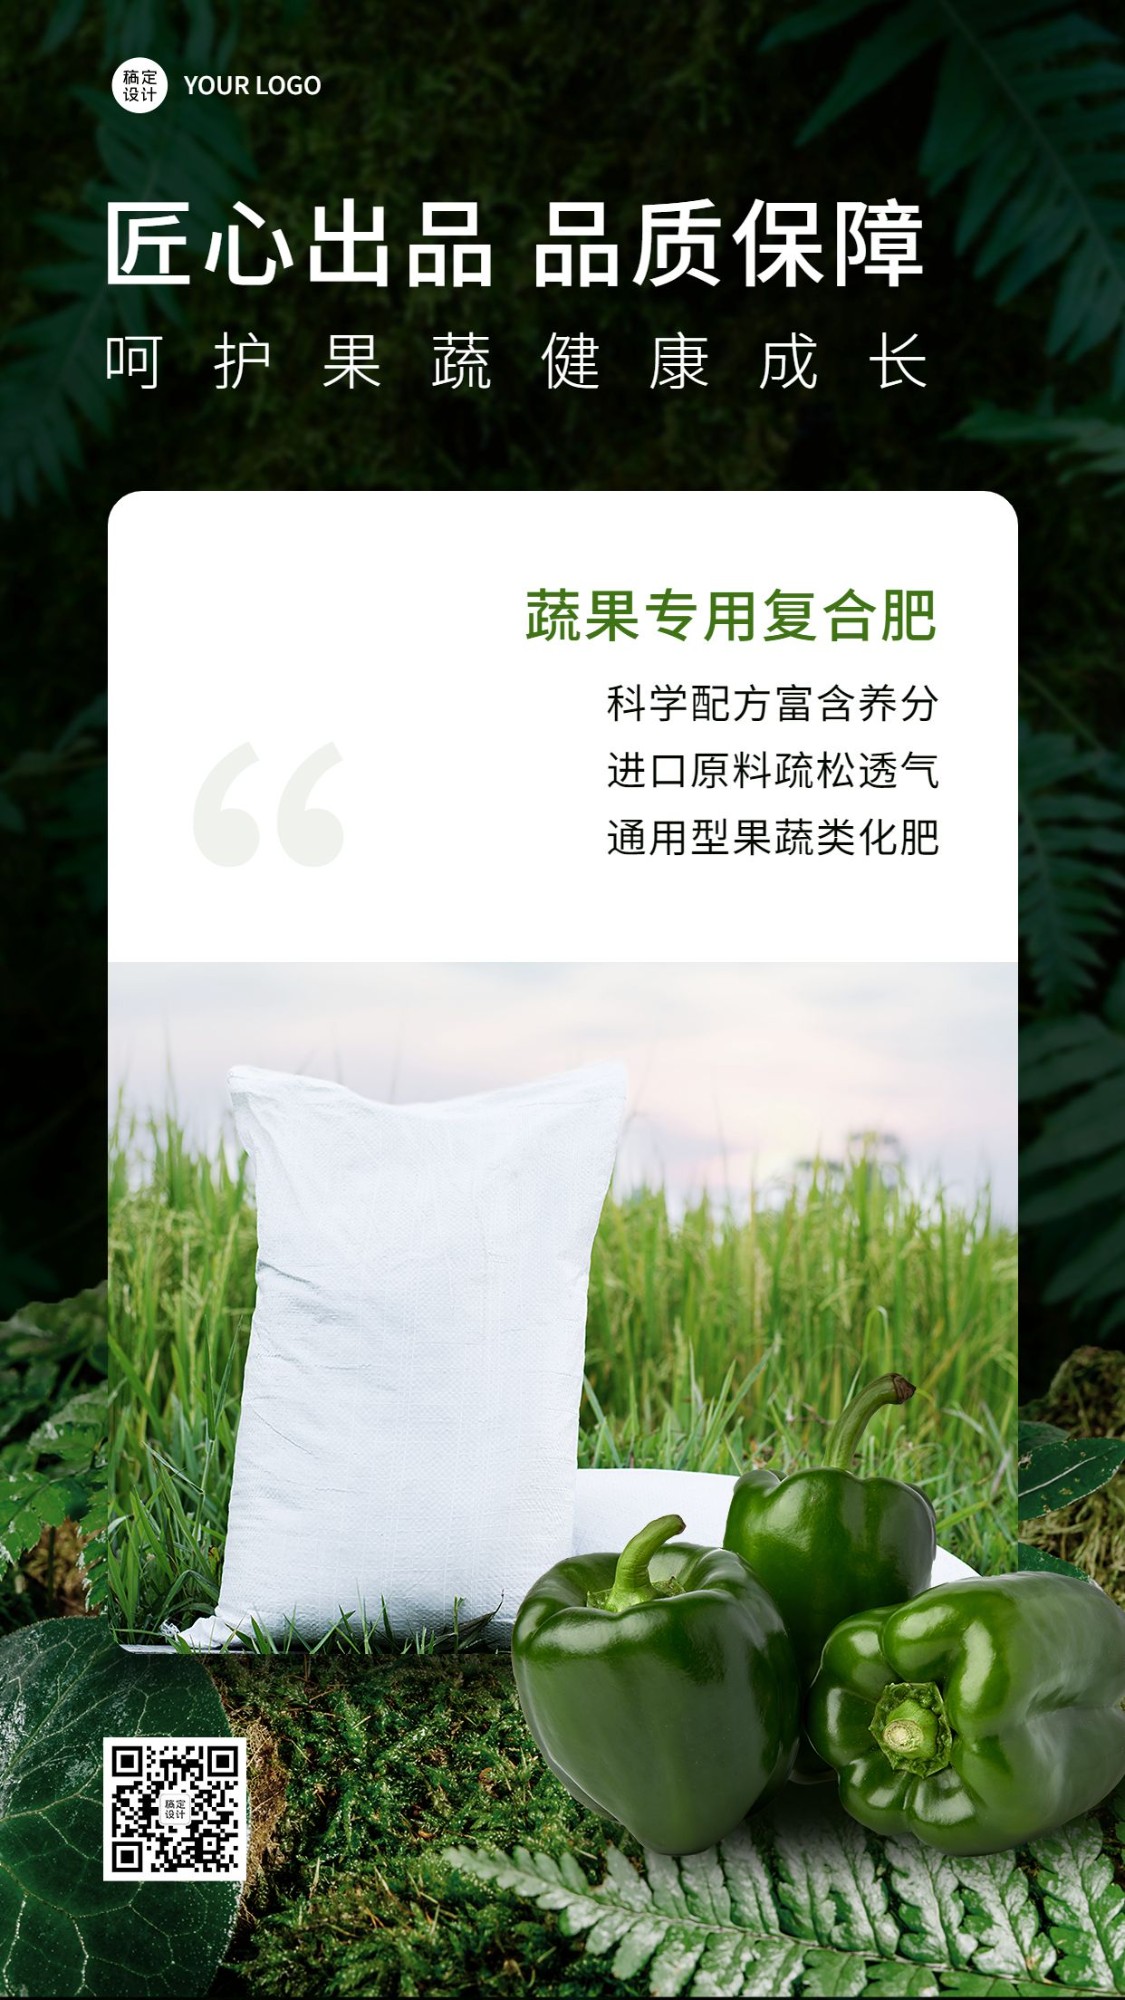 果蔬种子化肥产品营销展示实景风手机海报预览效果